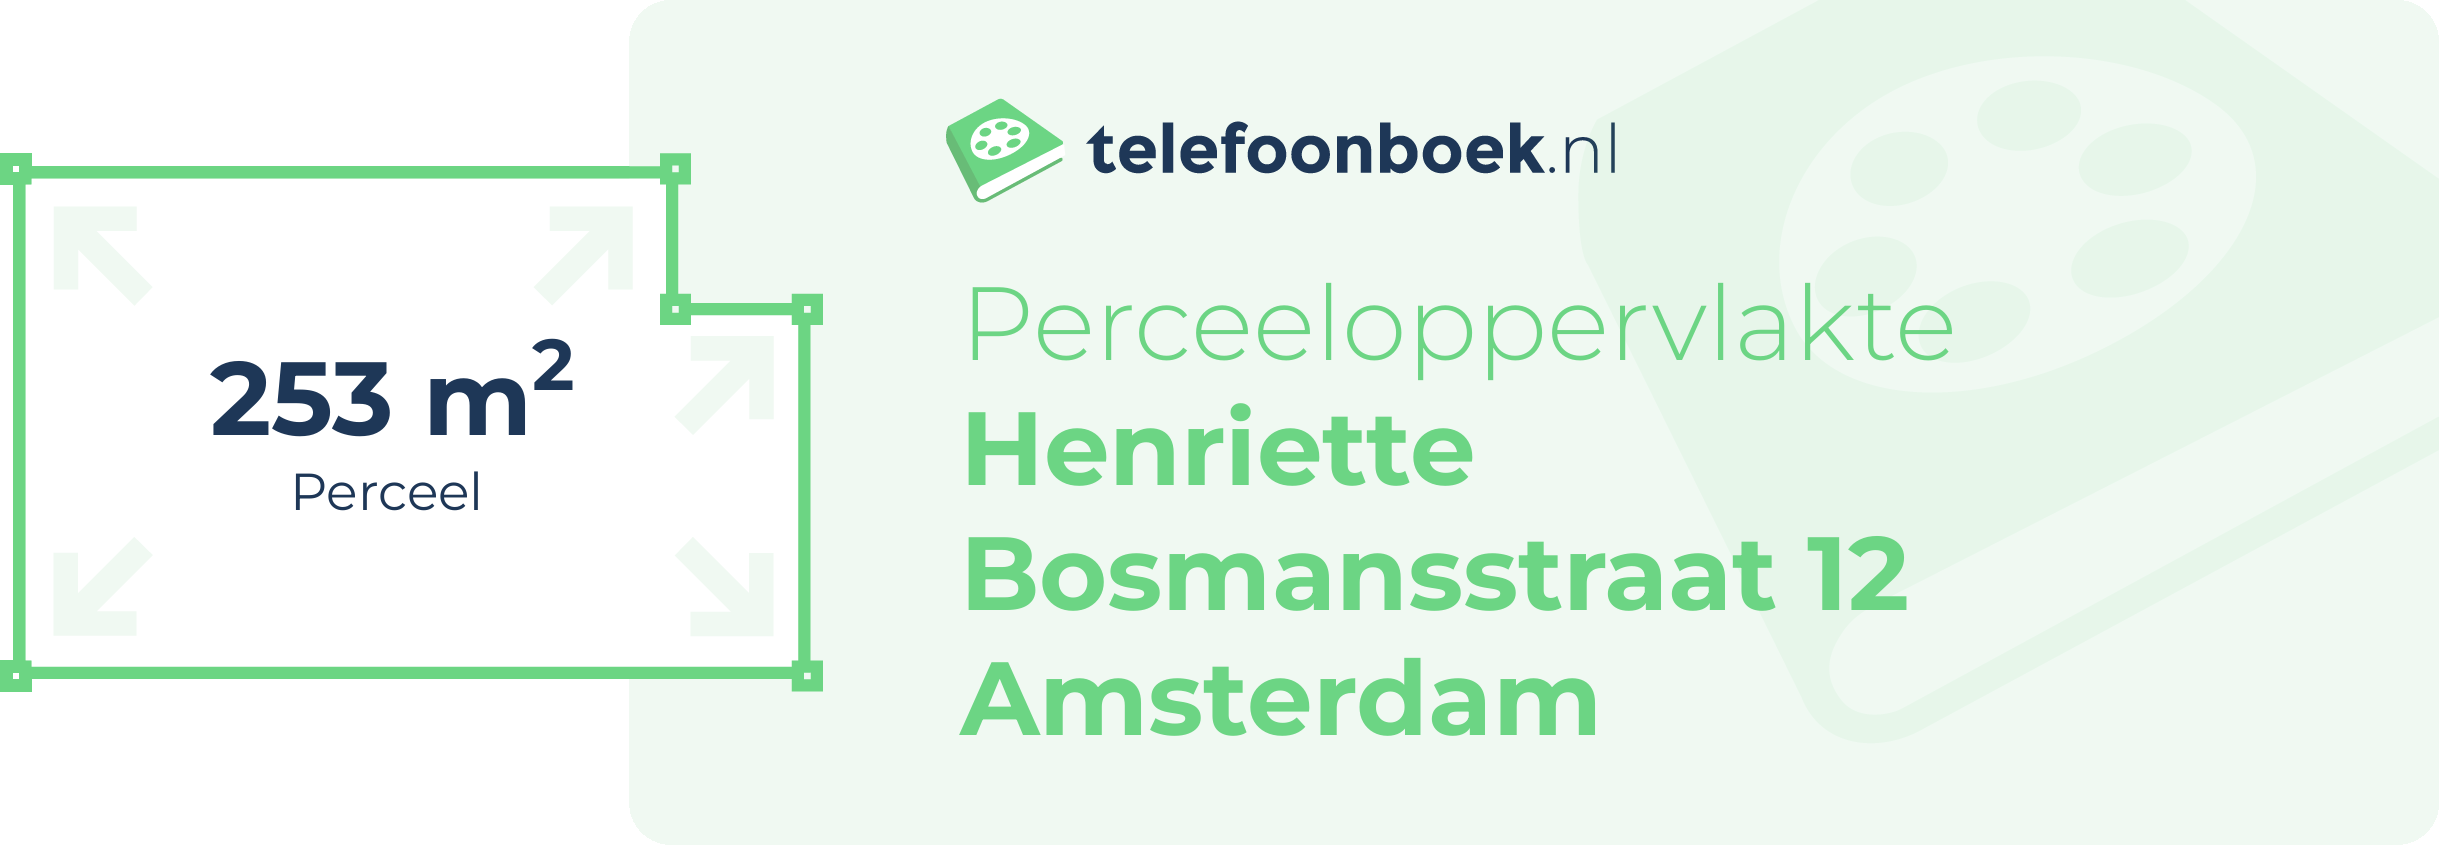 Perceeloppervlakte Henriette Bosmansstraat 12 Amsterdam